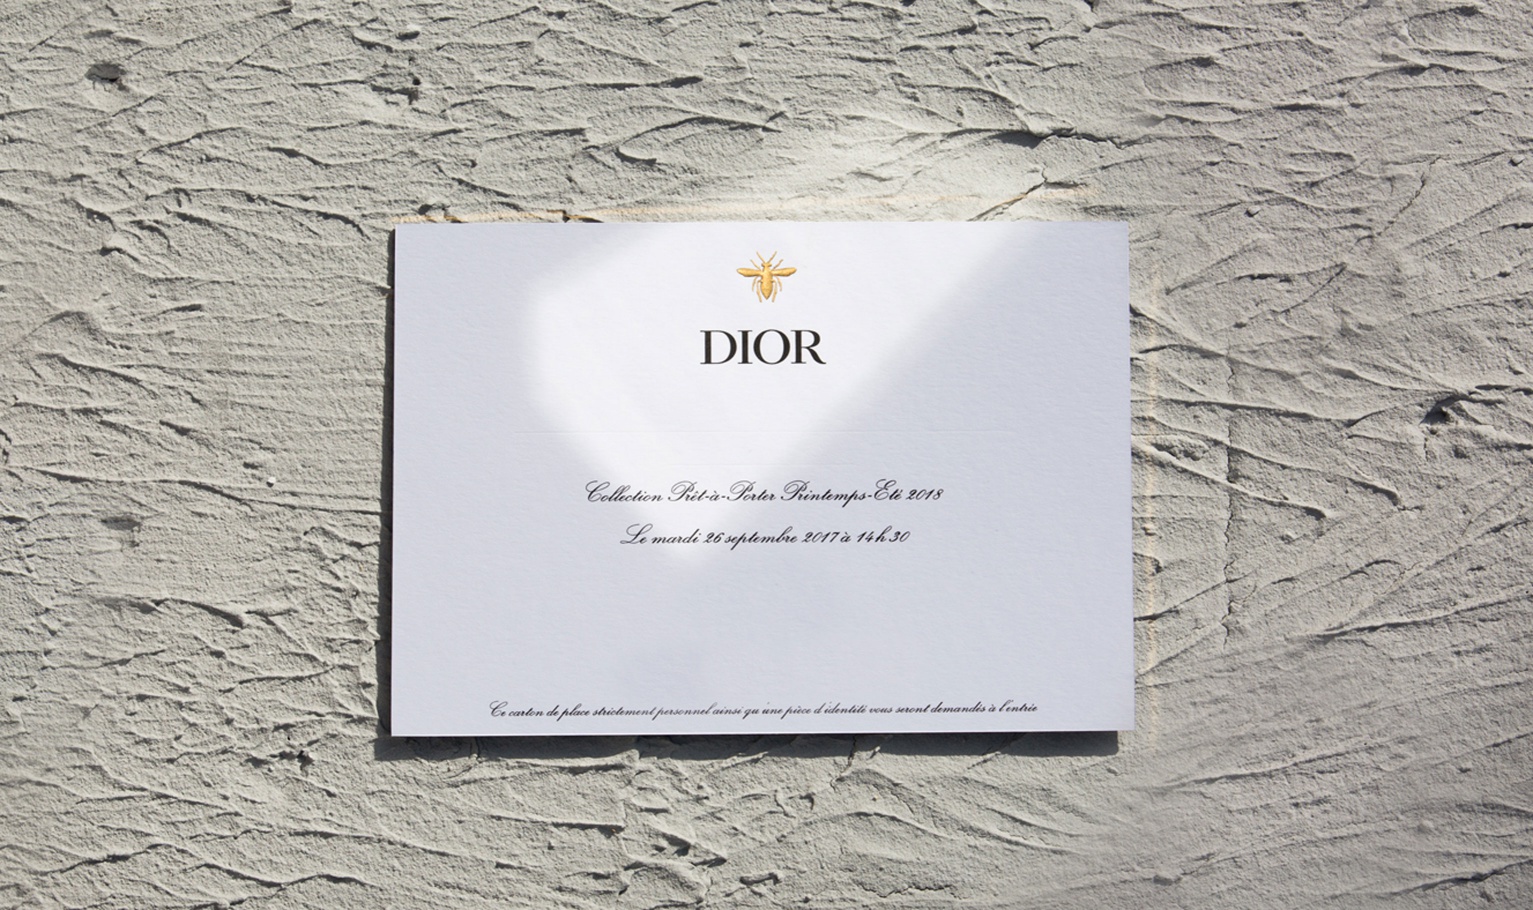 Thiệp mời show diễn Xuân Hè 2018 của Dior